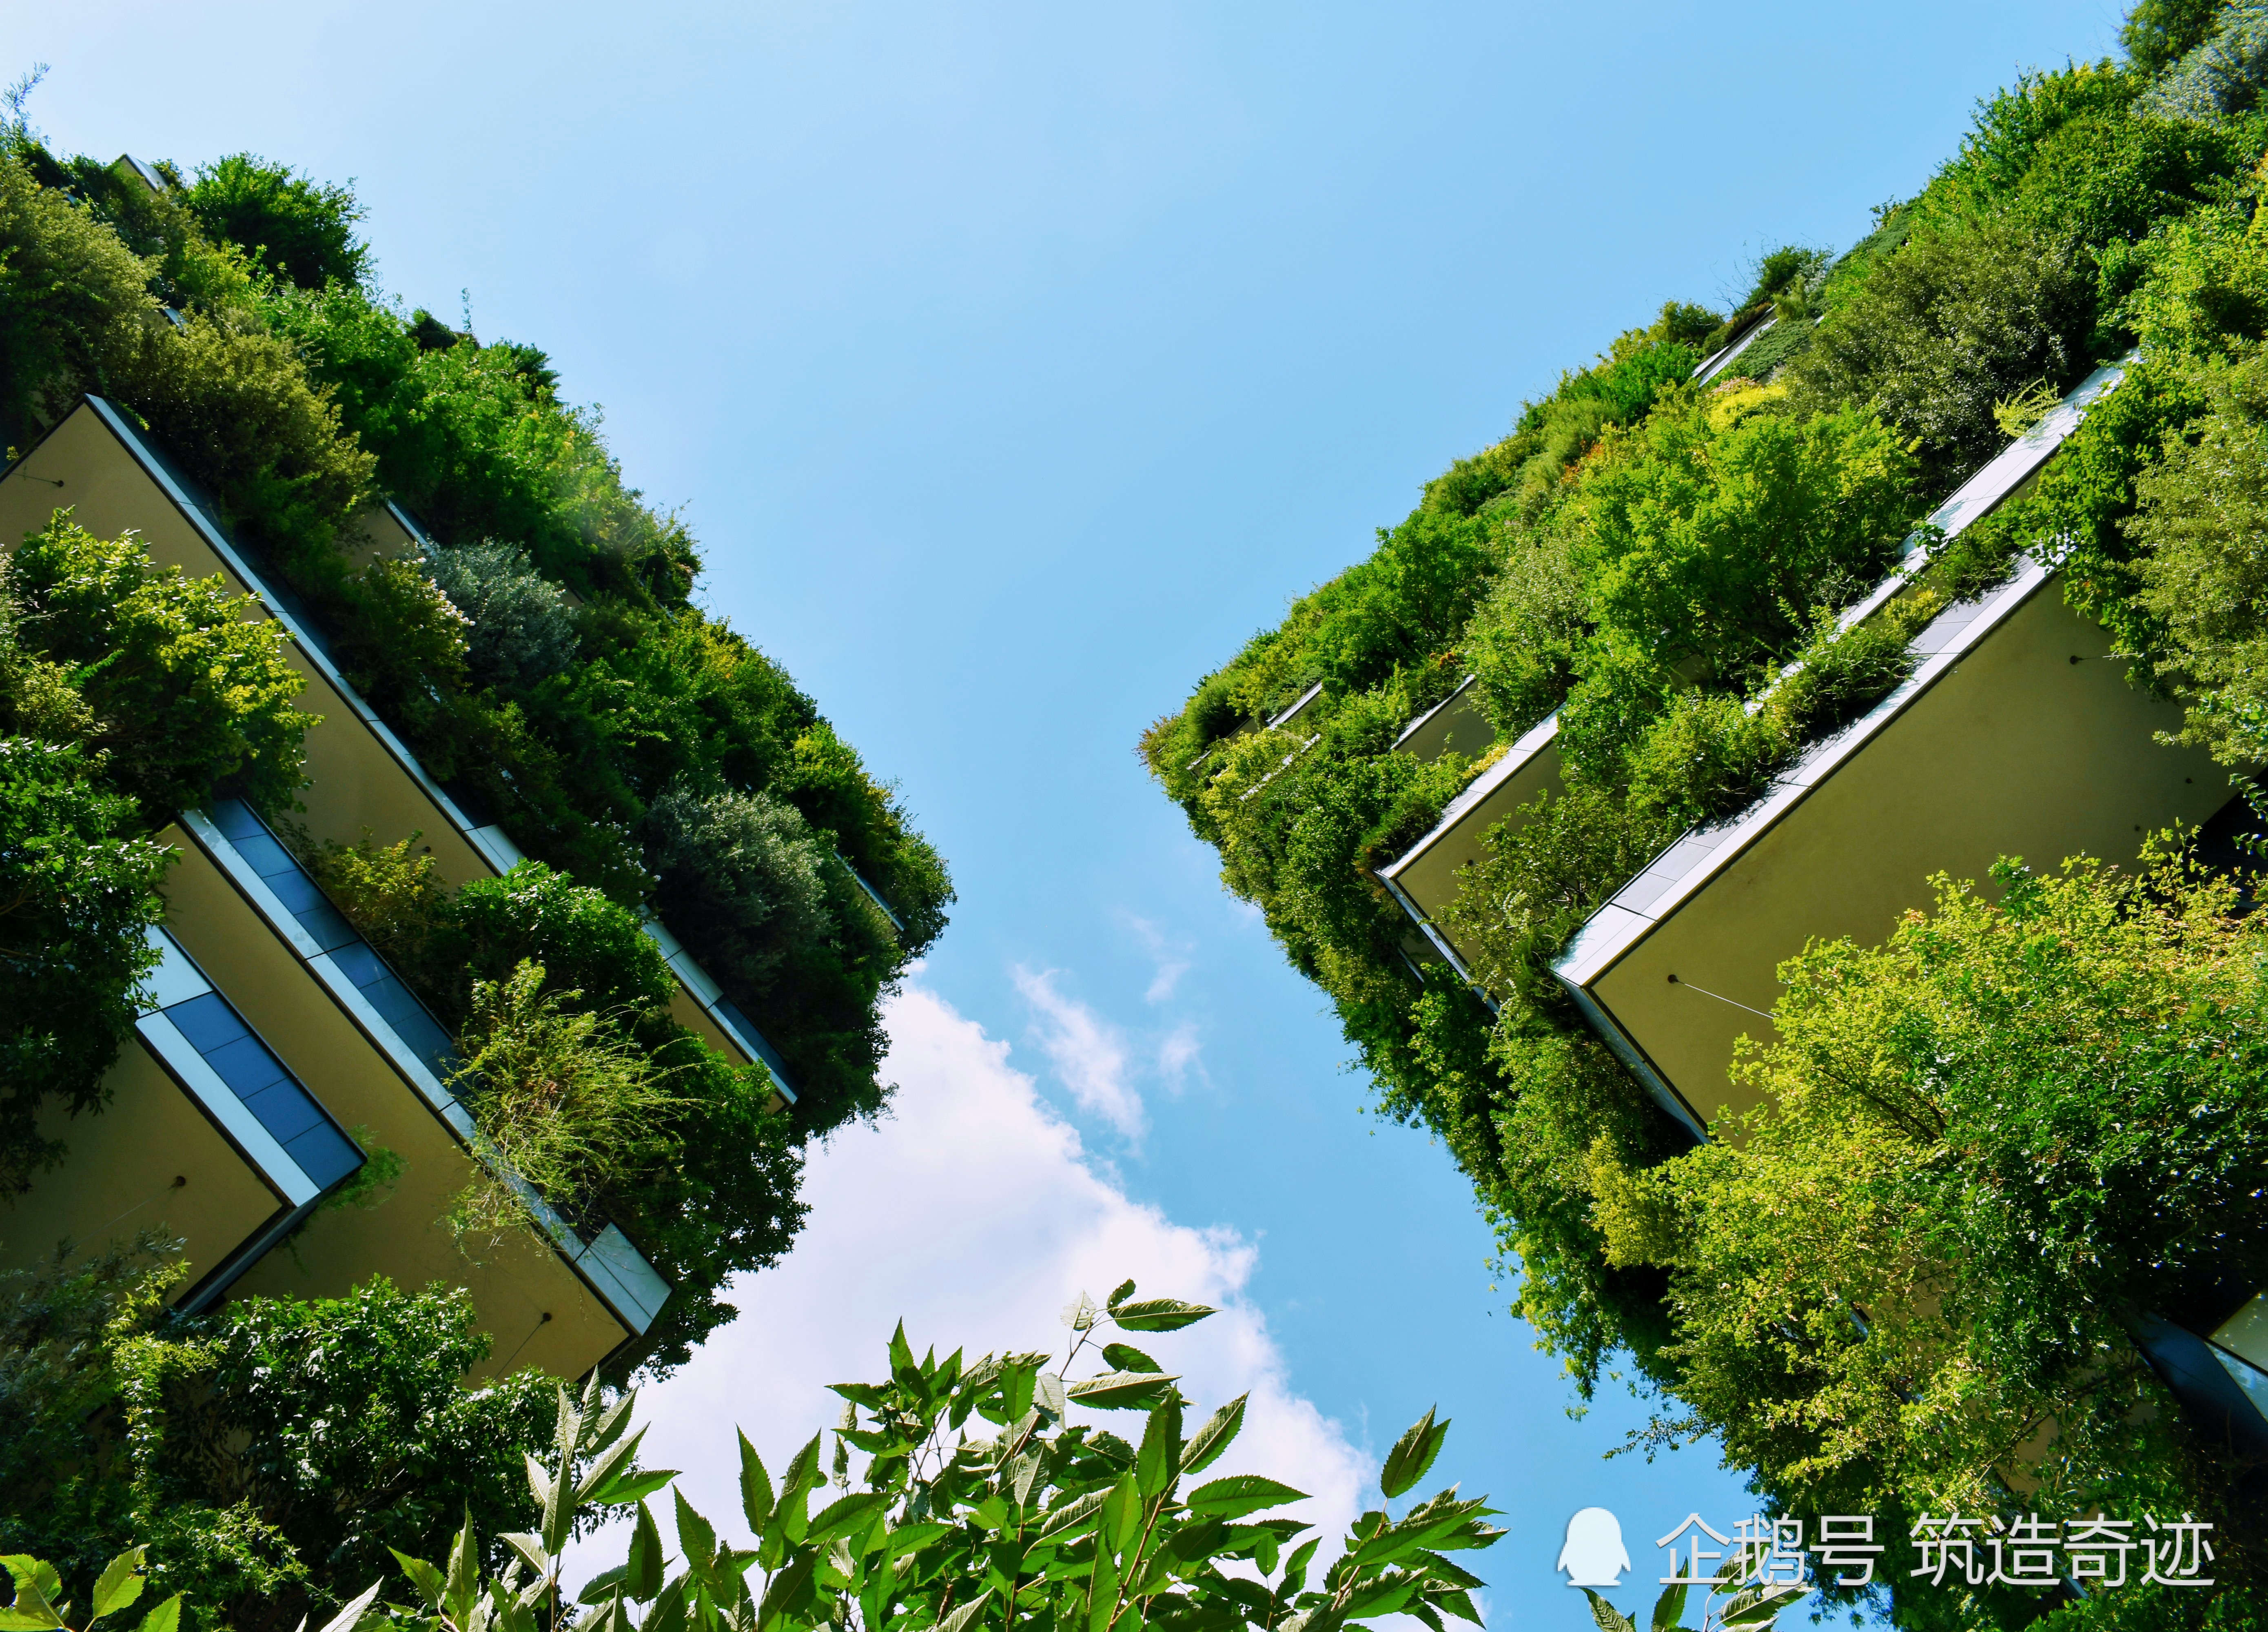 意大利"垂直森林",高端生态建筑,是你梦寐以求的居所吗?